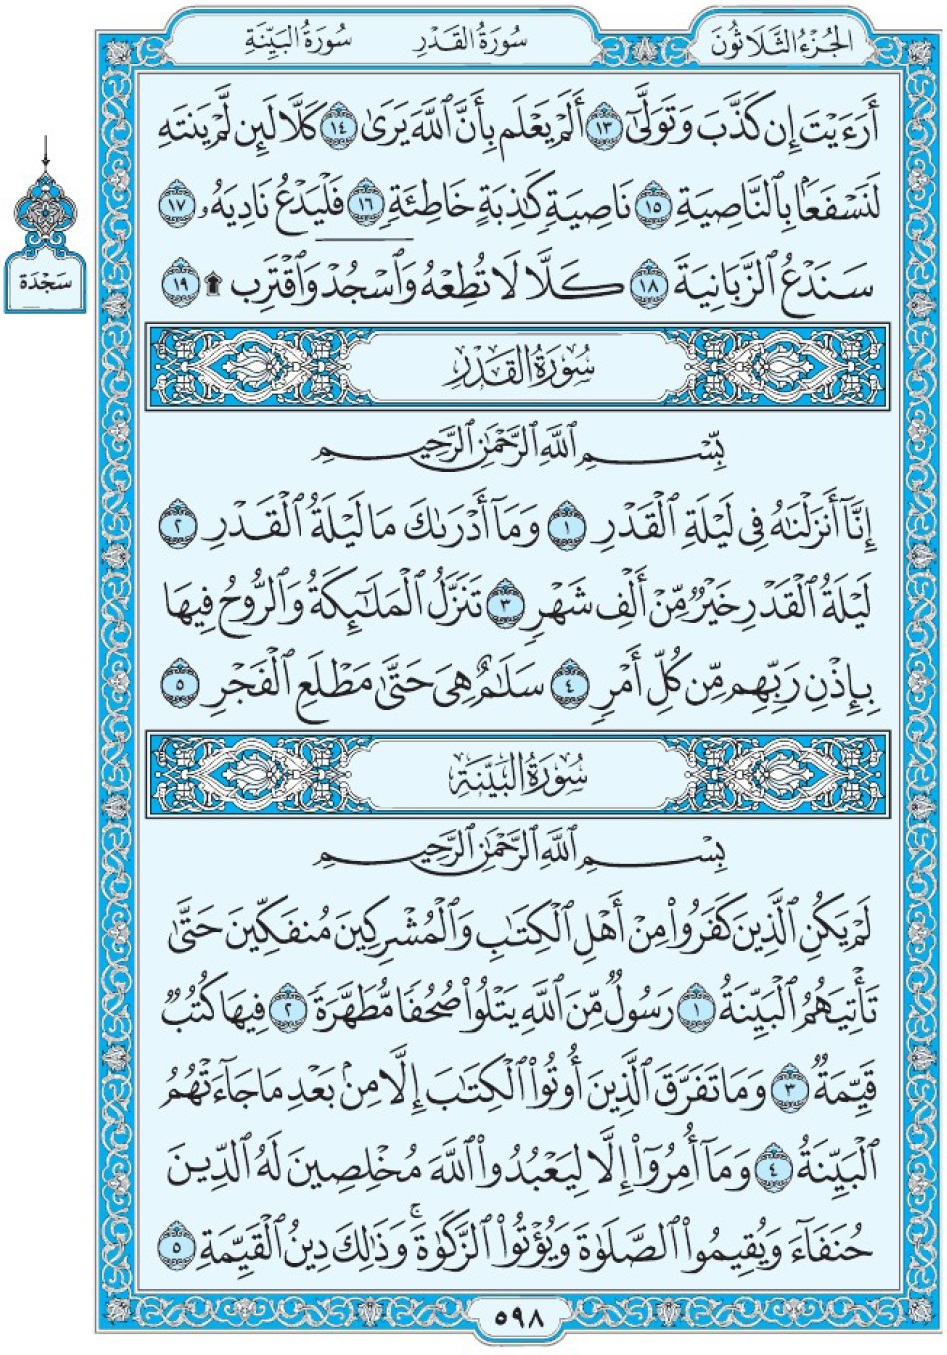 Коран Мединский мусхаф страница 598, сура 87 аль-Кадр, 98 аль-Баййина